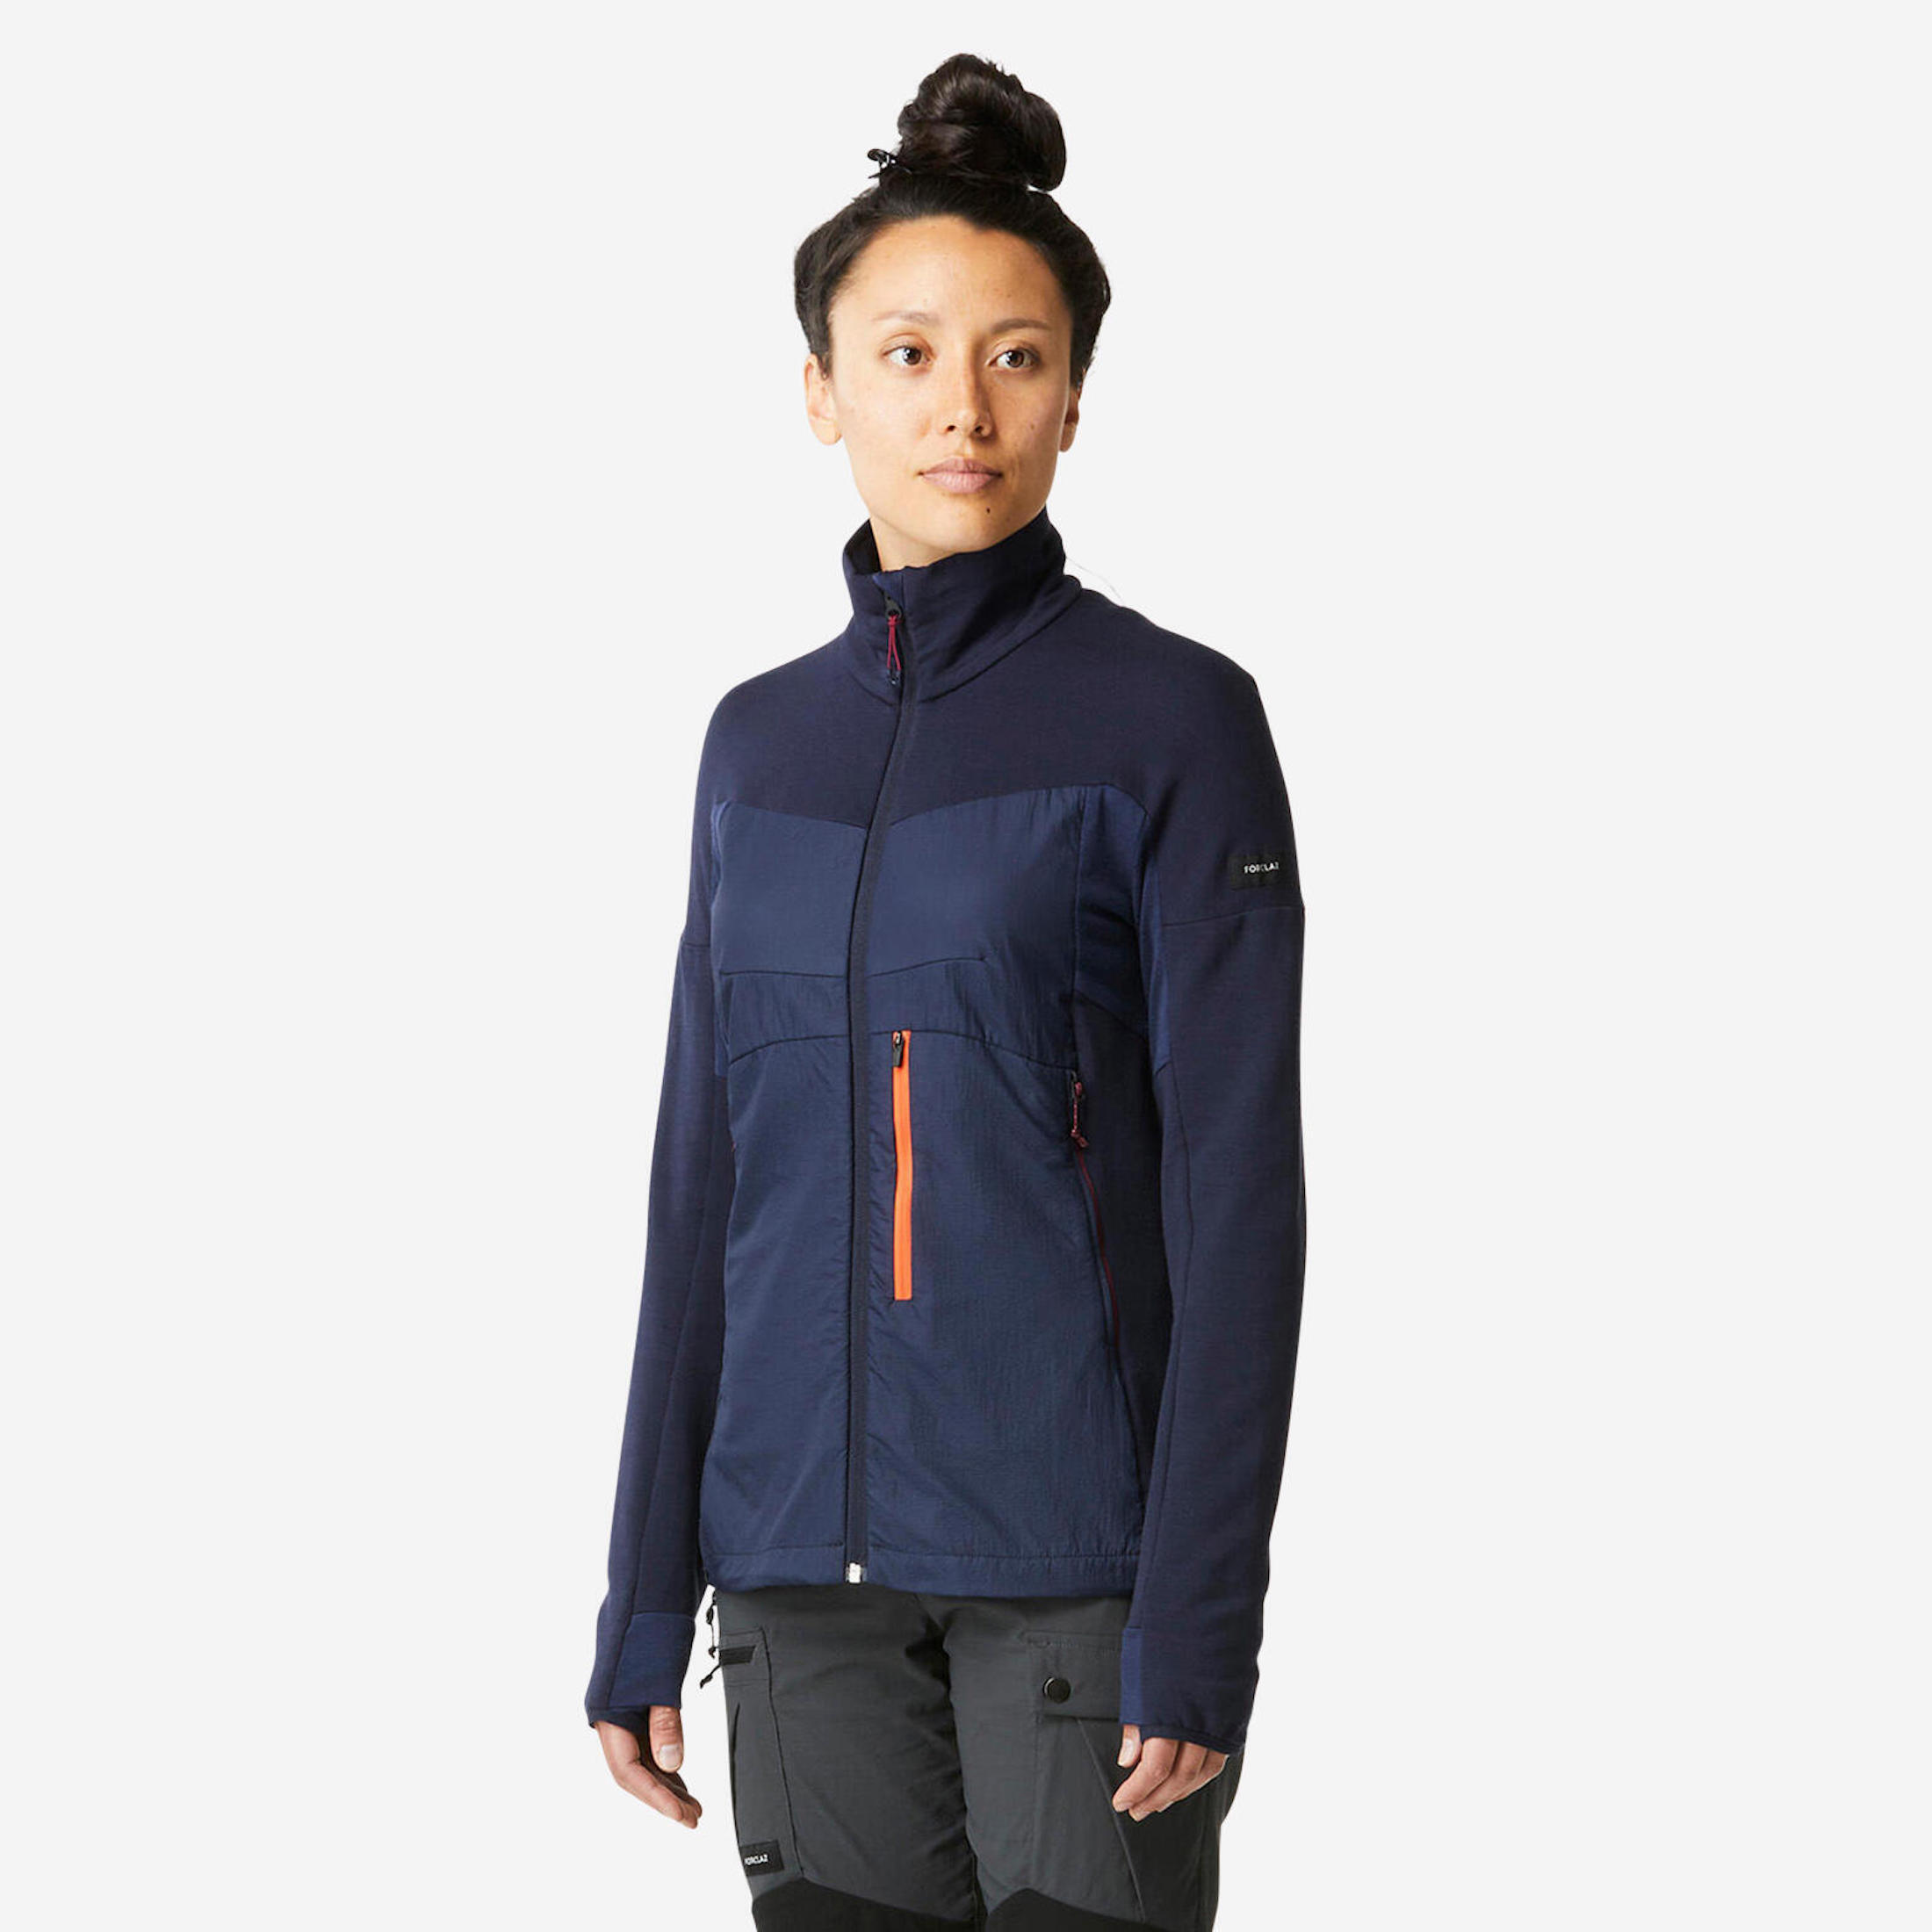 Women's Merino Wool Trekking Jacket Liner - MT900 1/8